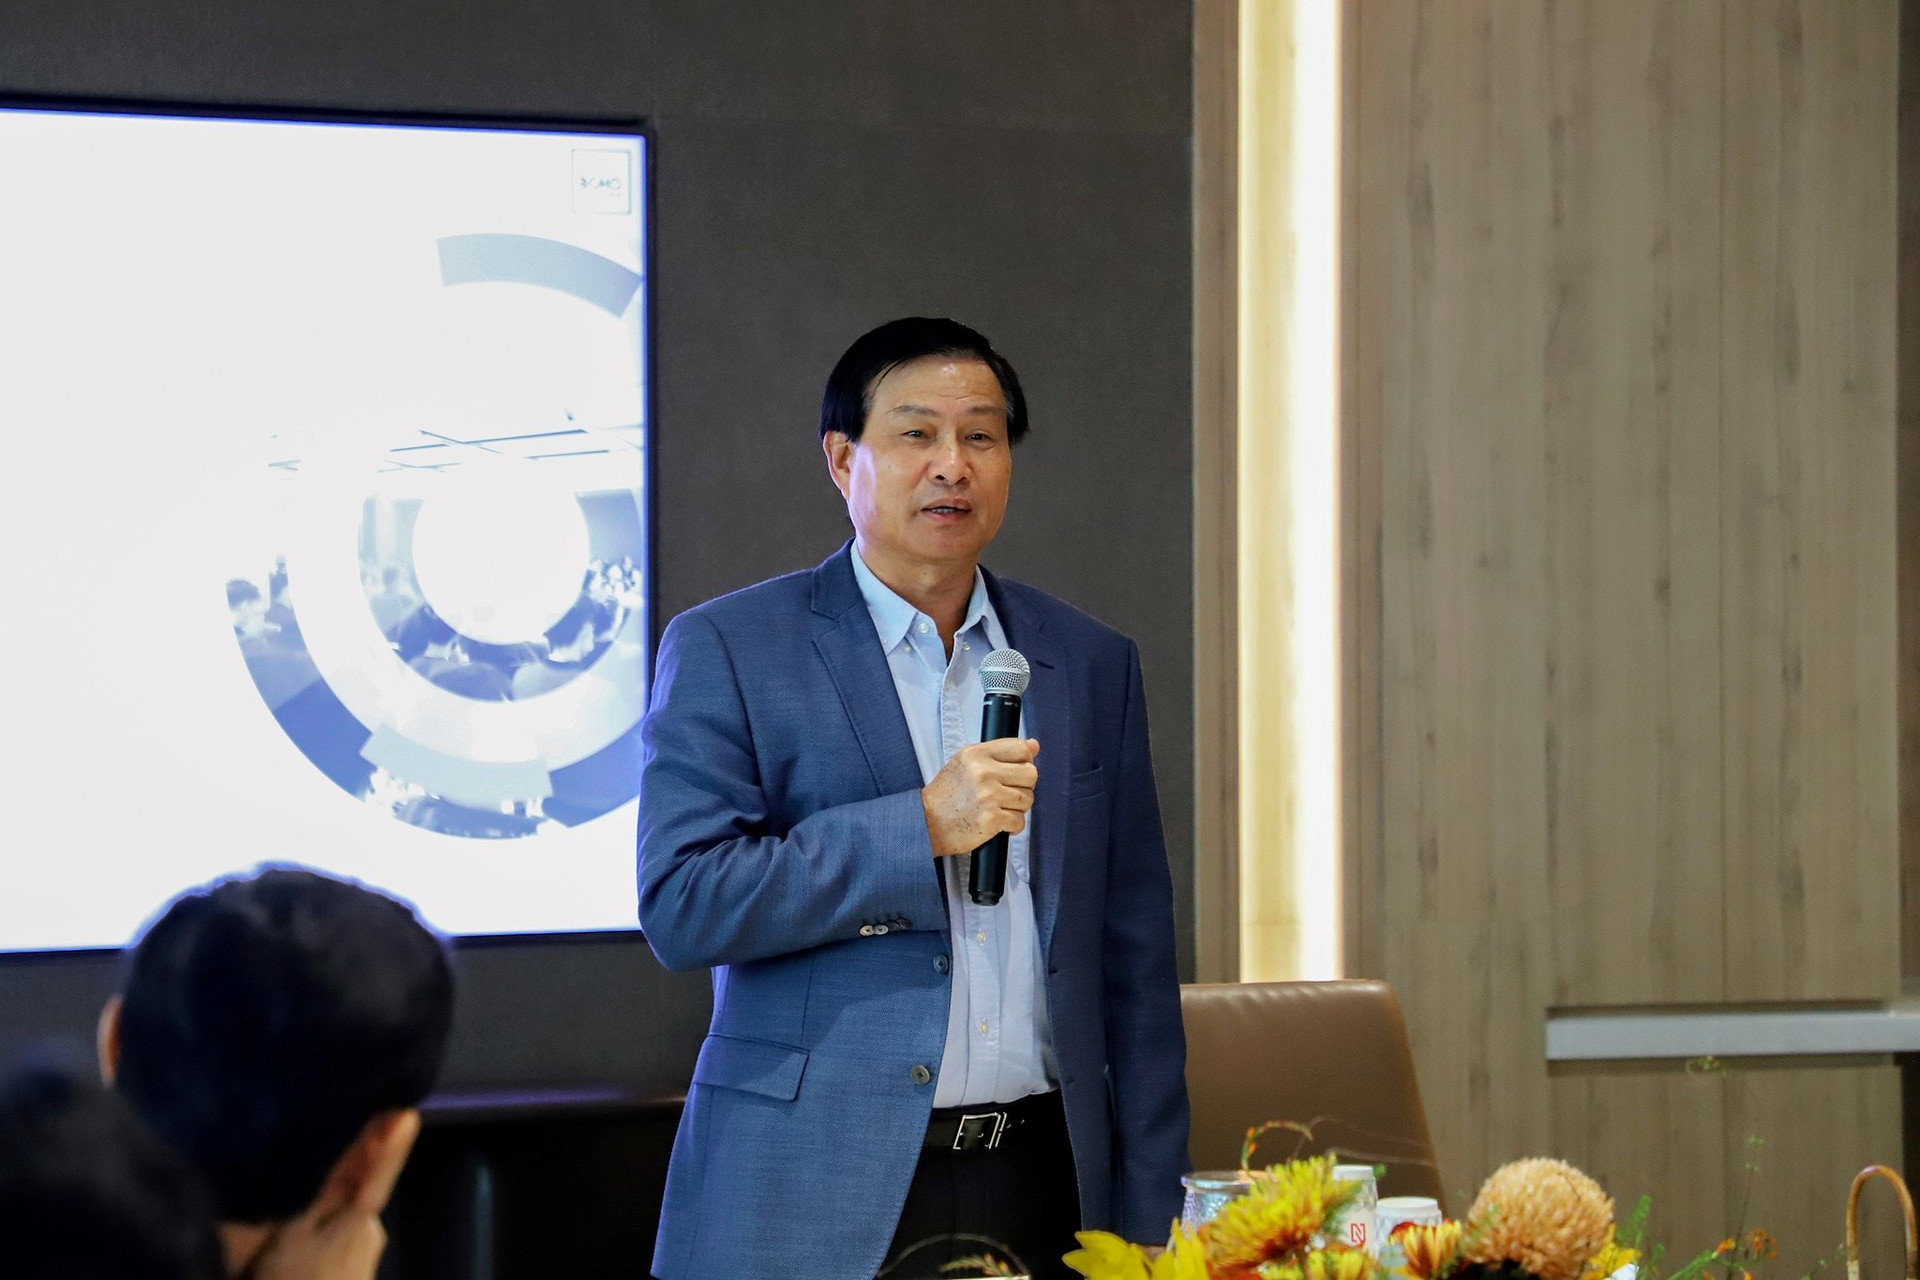 Sau 2 năm rời Coteccons, “đế chế” mới của ông Nguyễn Bá Dương gồm SOL E&C, Newtecons, Ricons, BM Windows, Boho Décor, DB tuyên bố đạt 1 tỷ USD doanh thu - Ảnh 2.